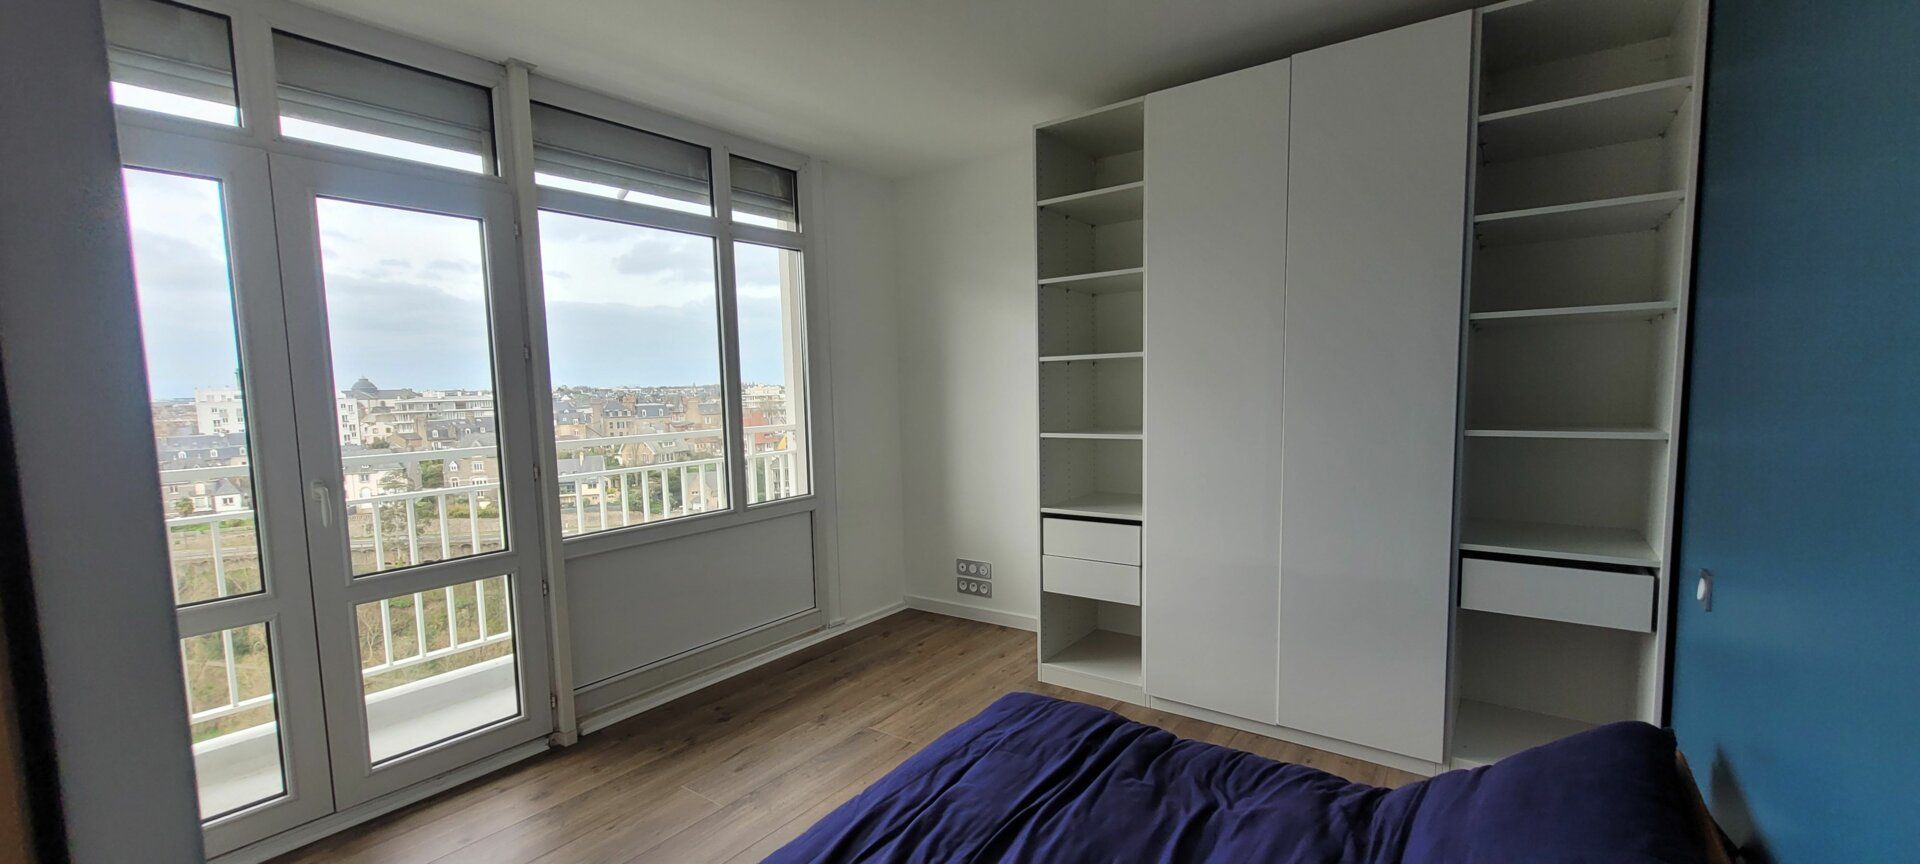 Appartement à vendre 3 72.15m2 à Saint-Brieuc vignette-13